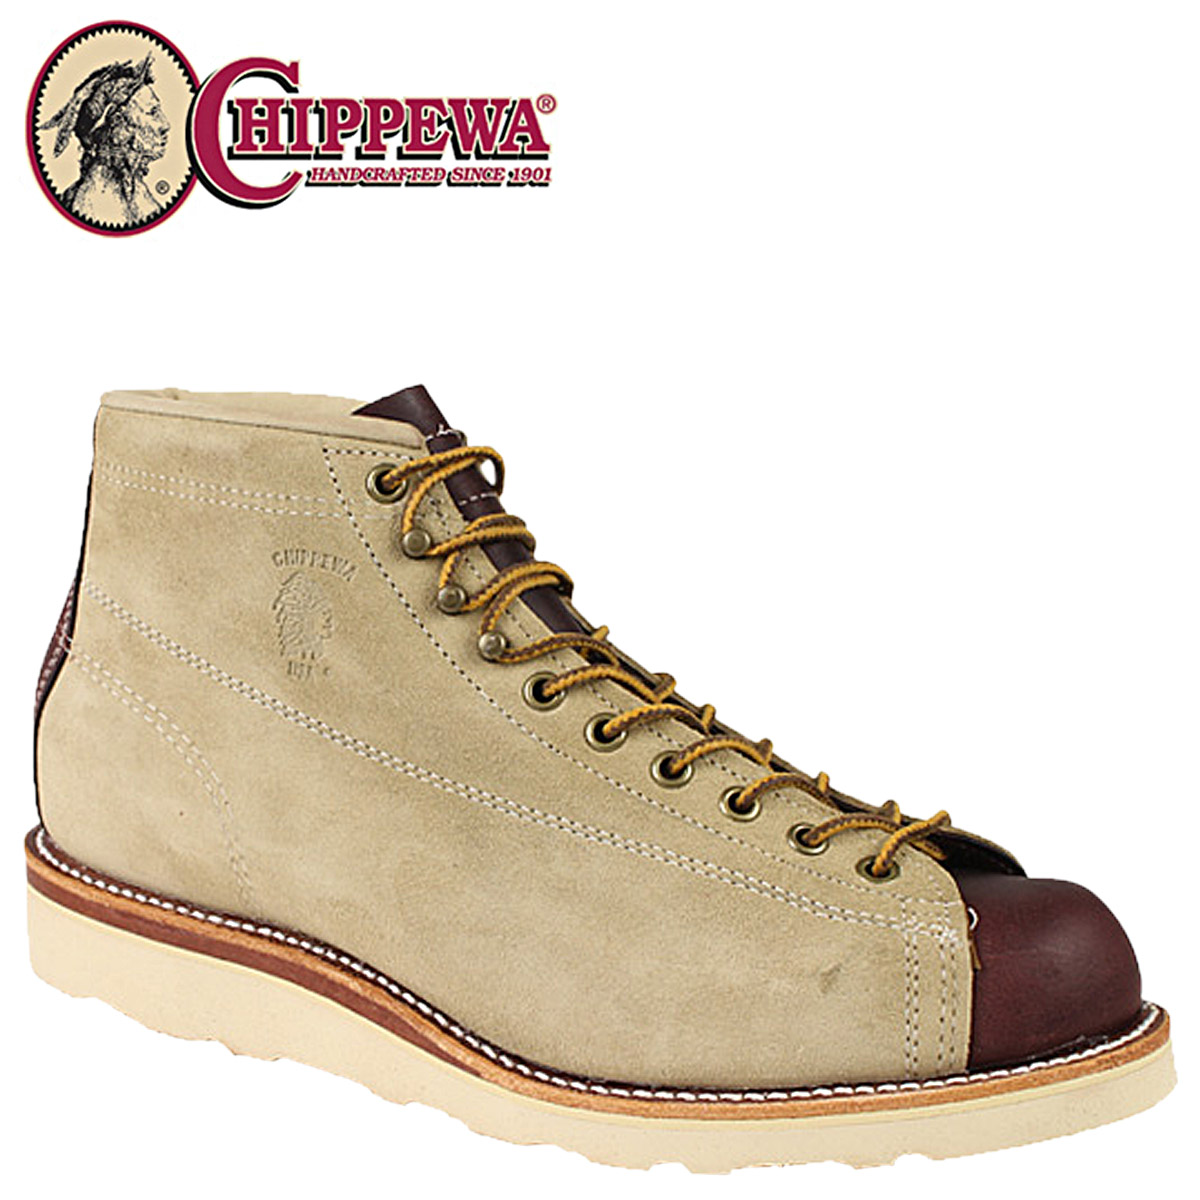 chippewa boots lace to toe